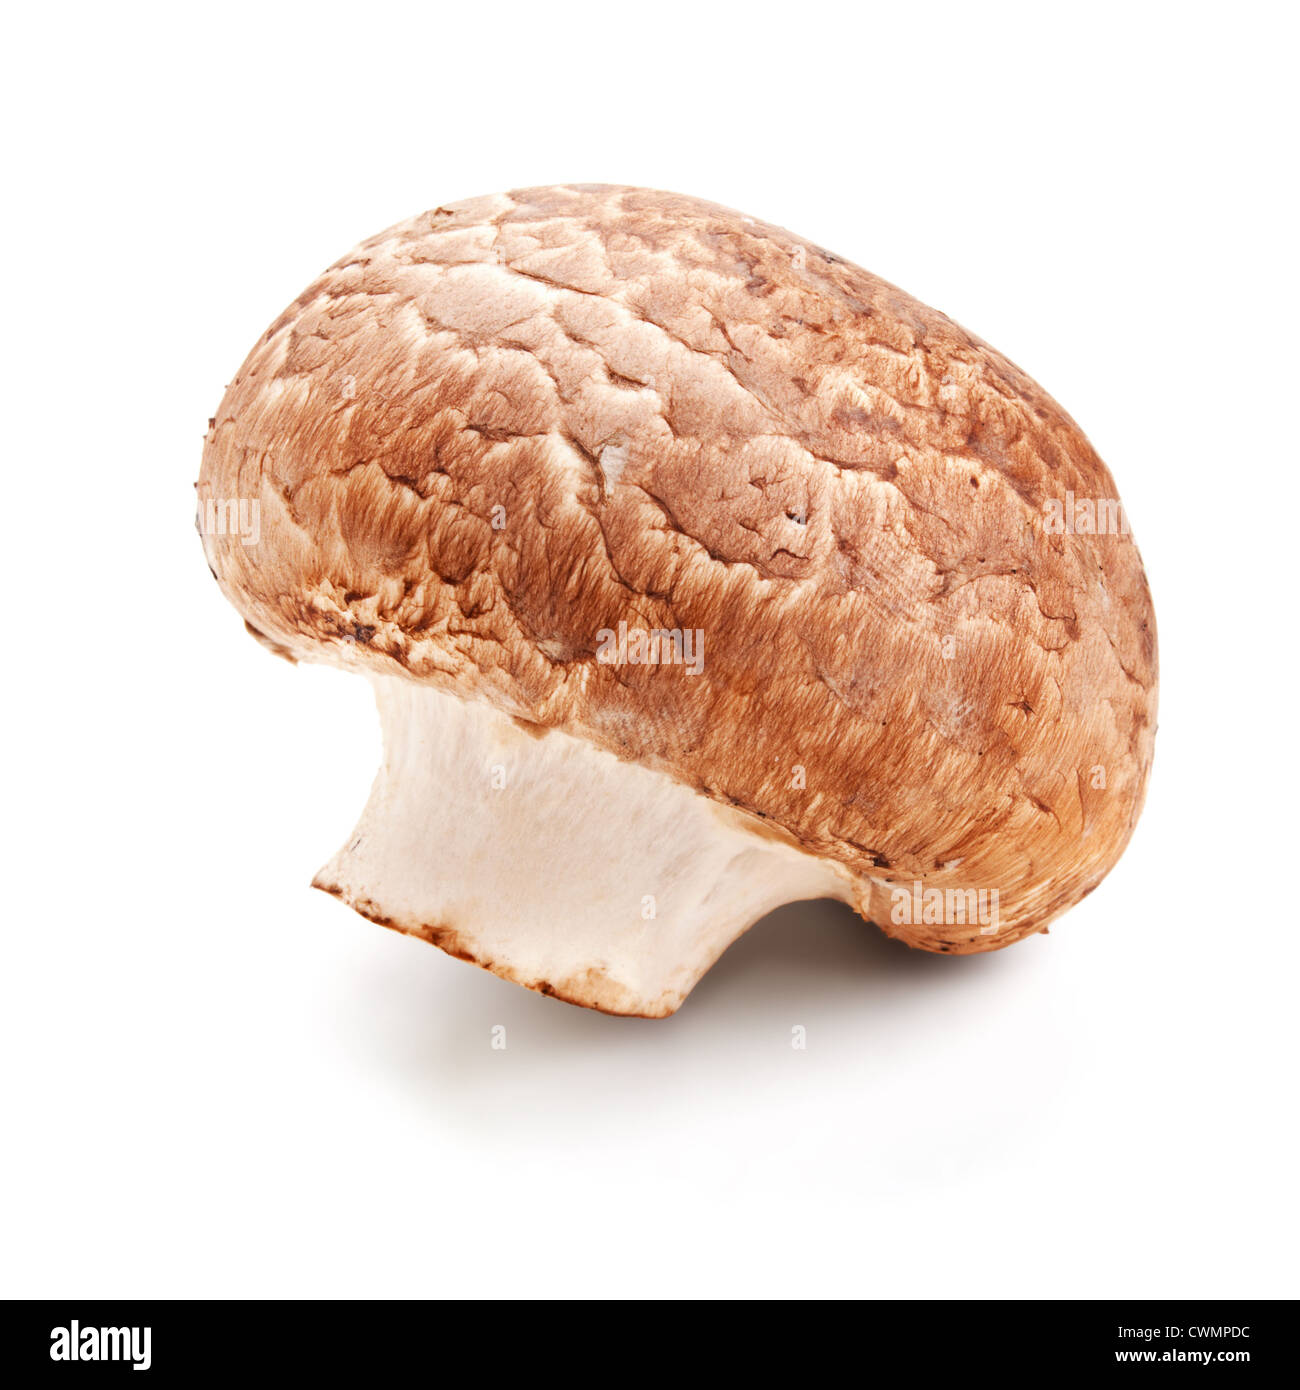 Funghi freschi champignon isolati su sfondo bianco Foto Stock